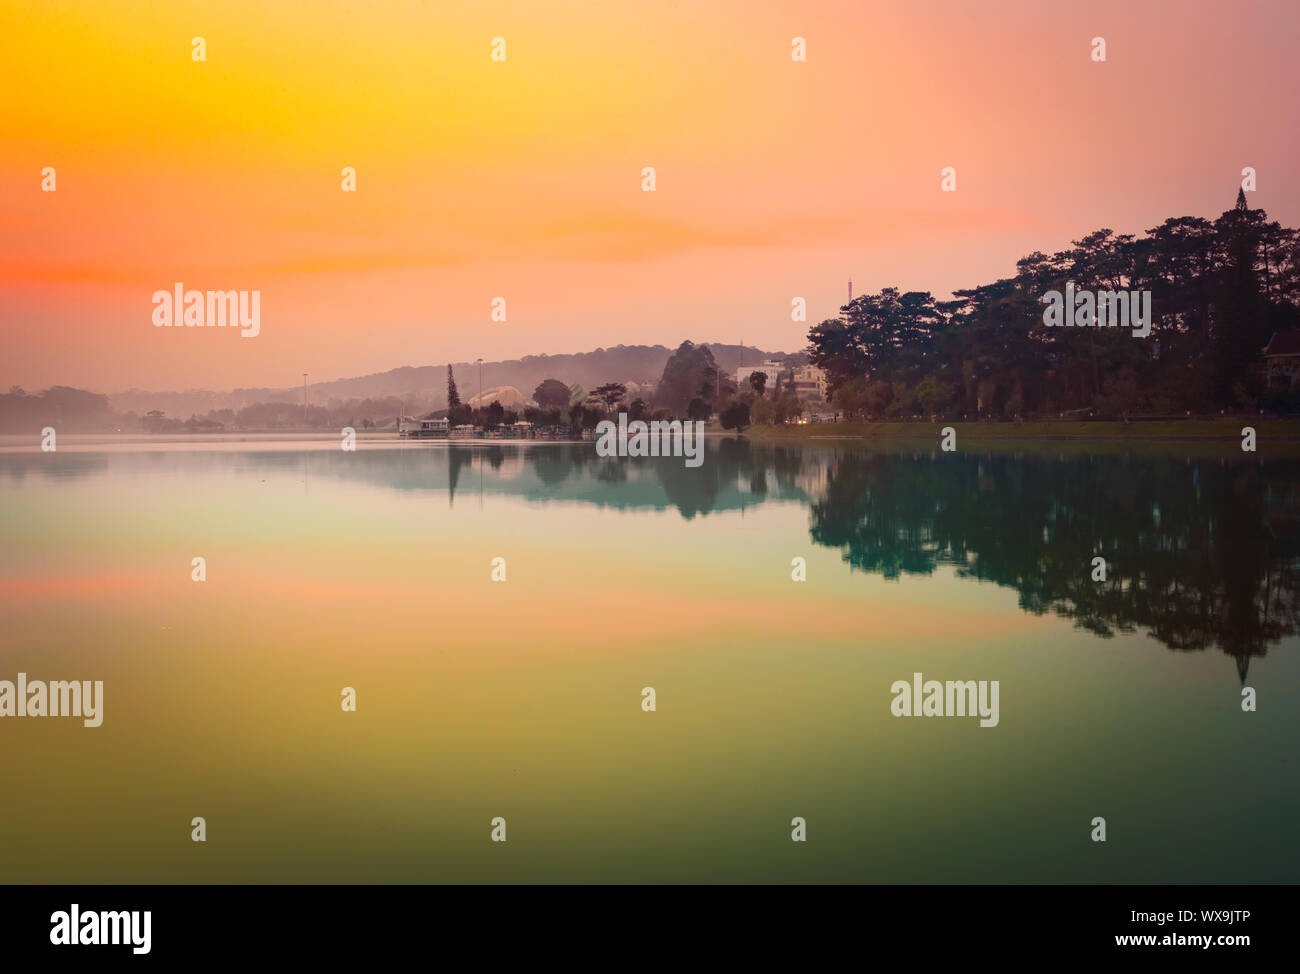 Sunrise over Xuan Huong Lake, Dalat, Vietnam Stock Photo